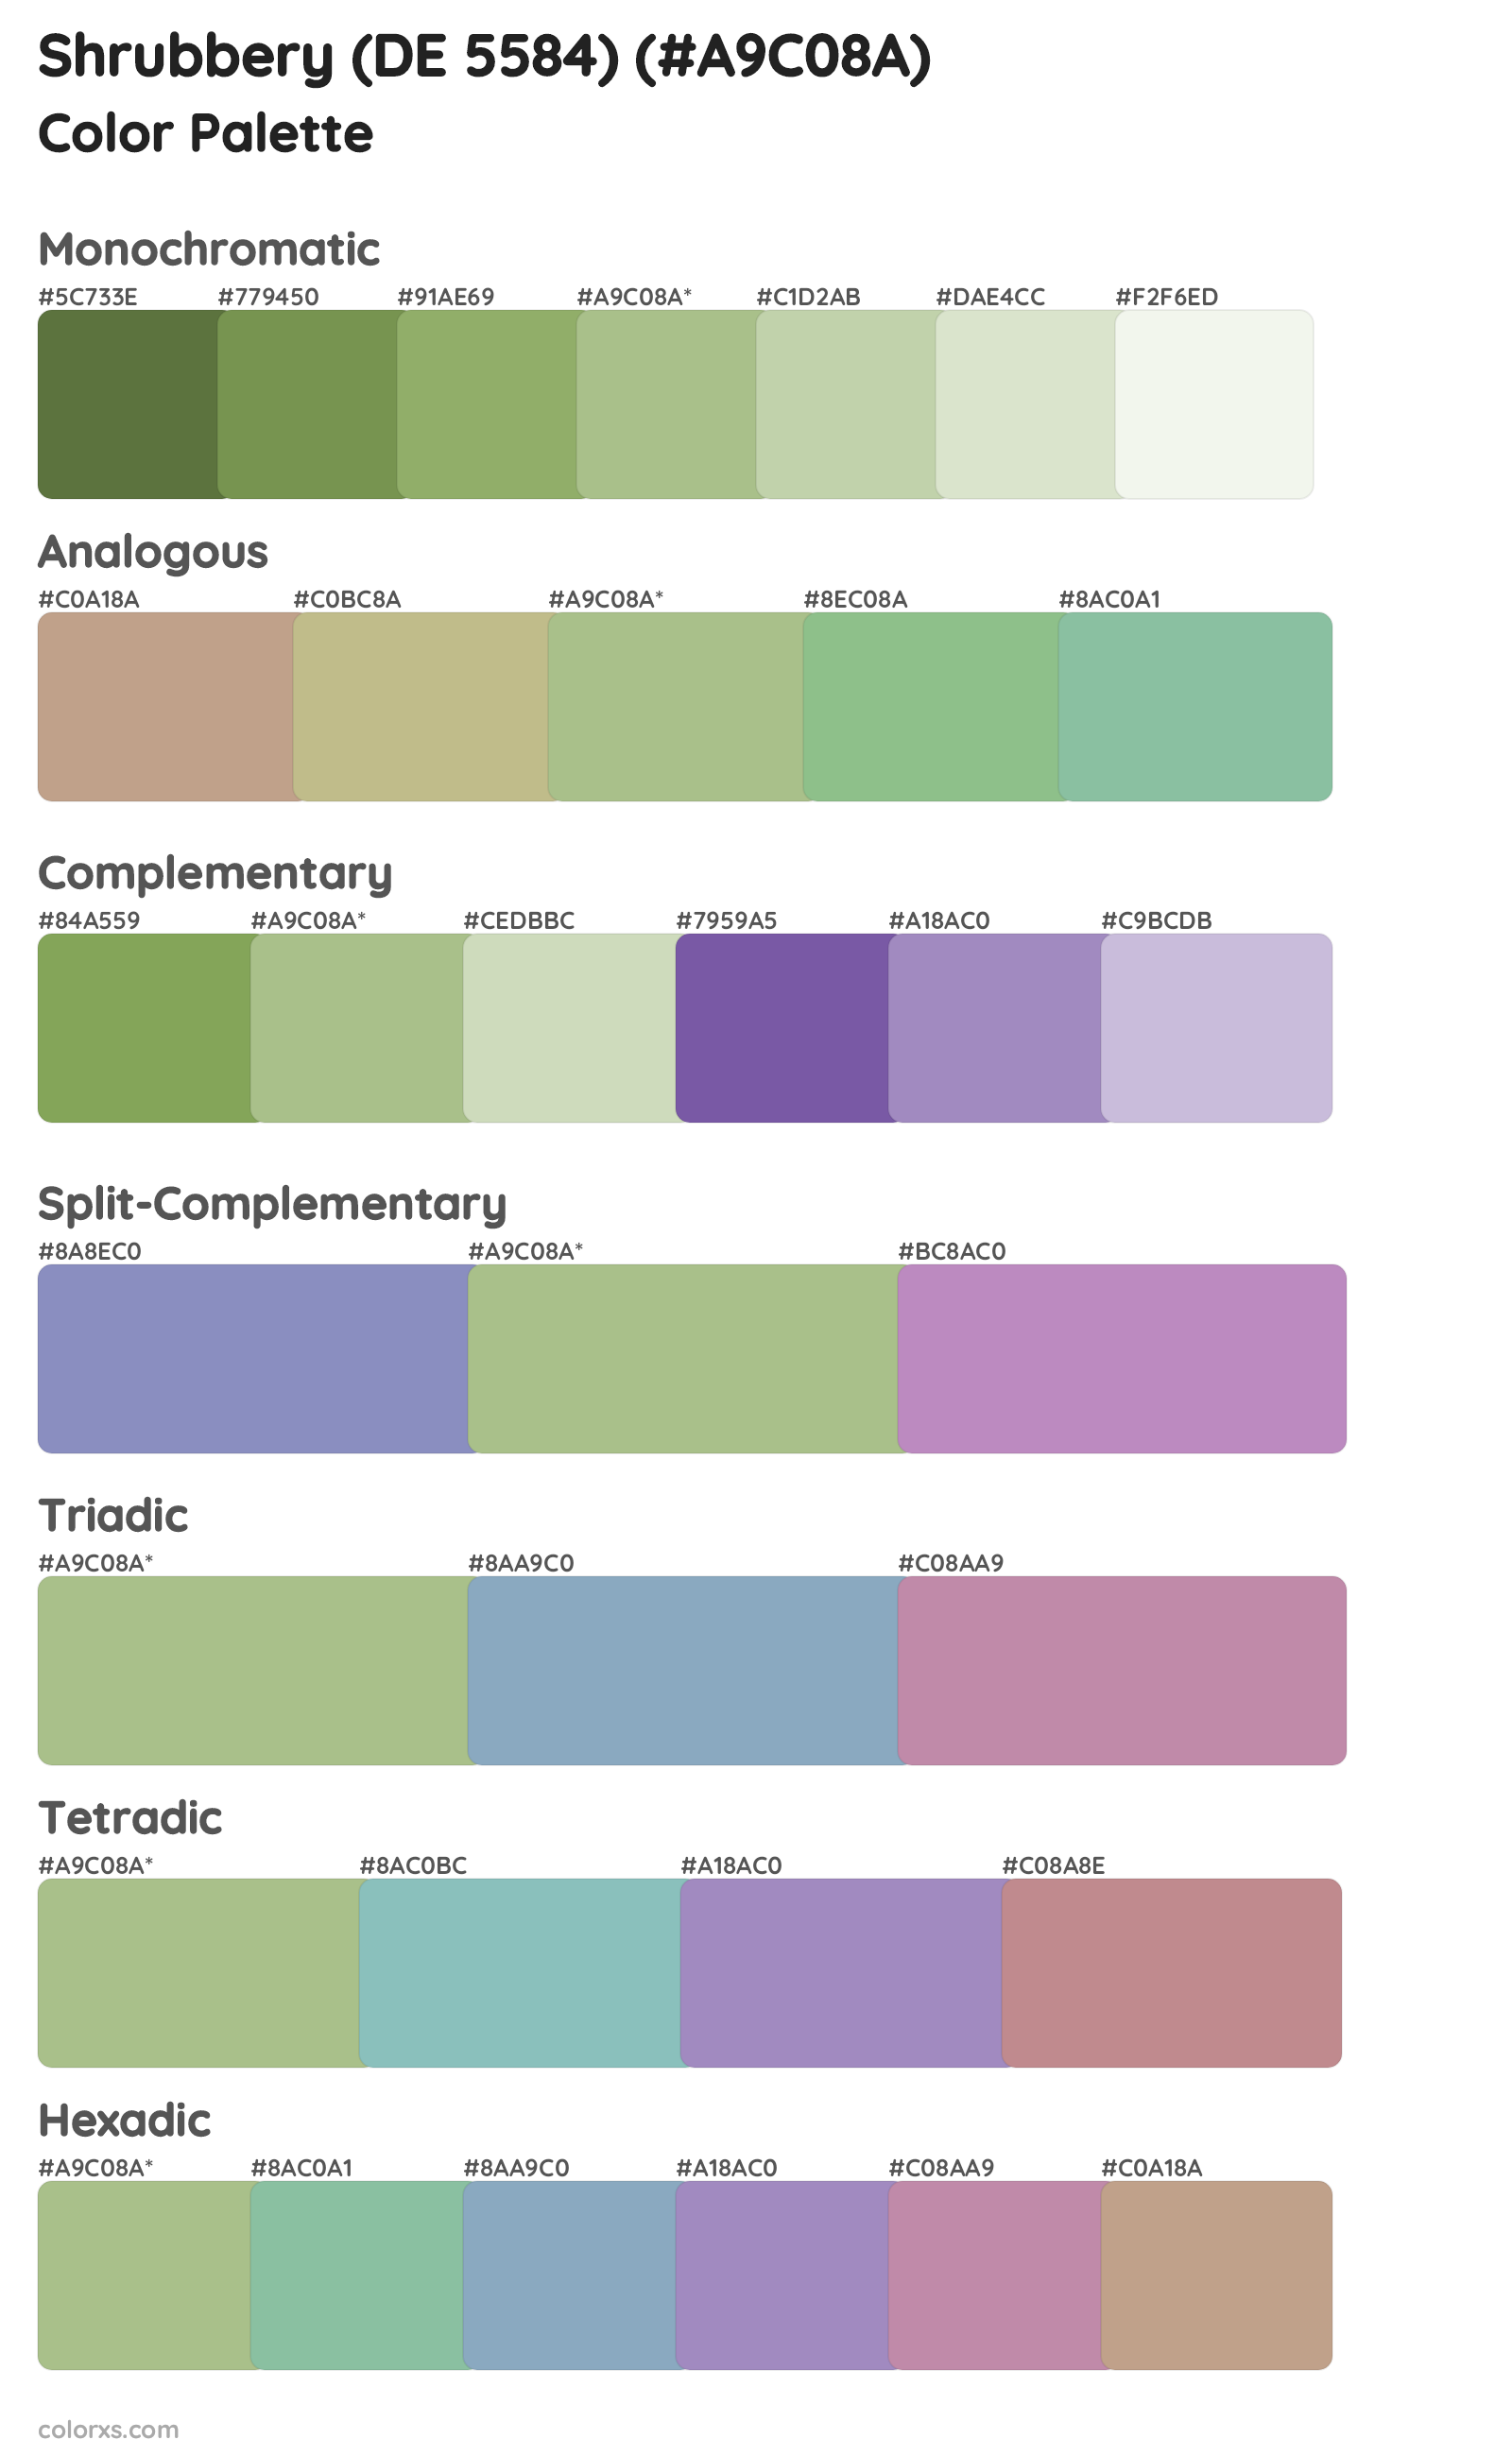 Shrubbery (DE 5584) Color Scheme Palettes